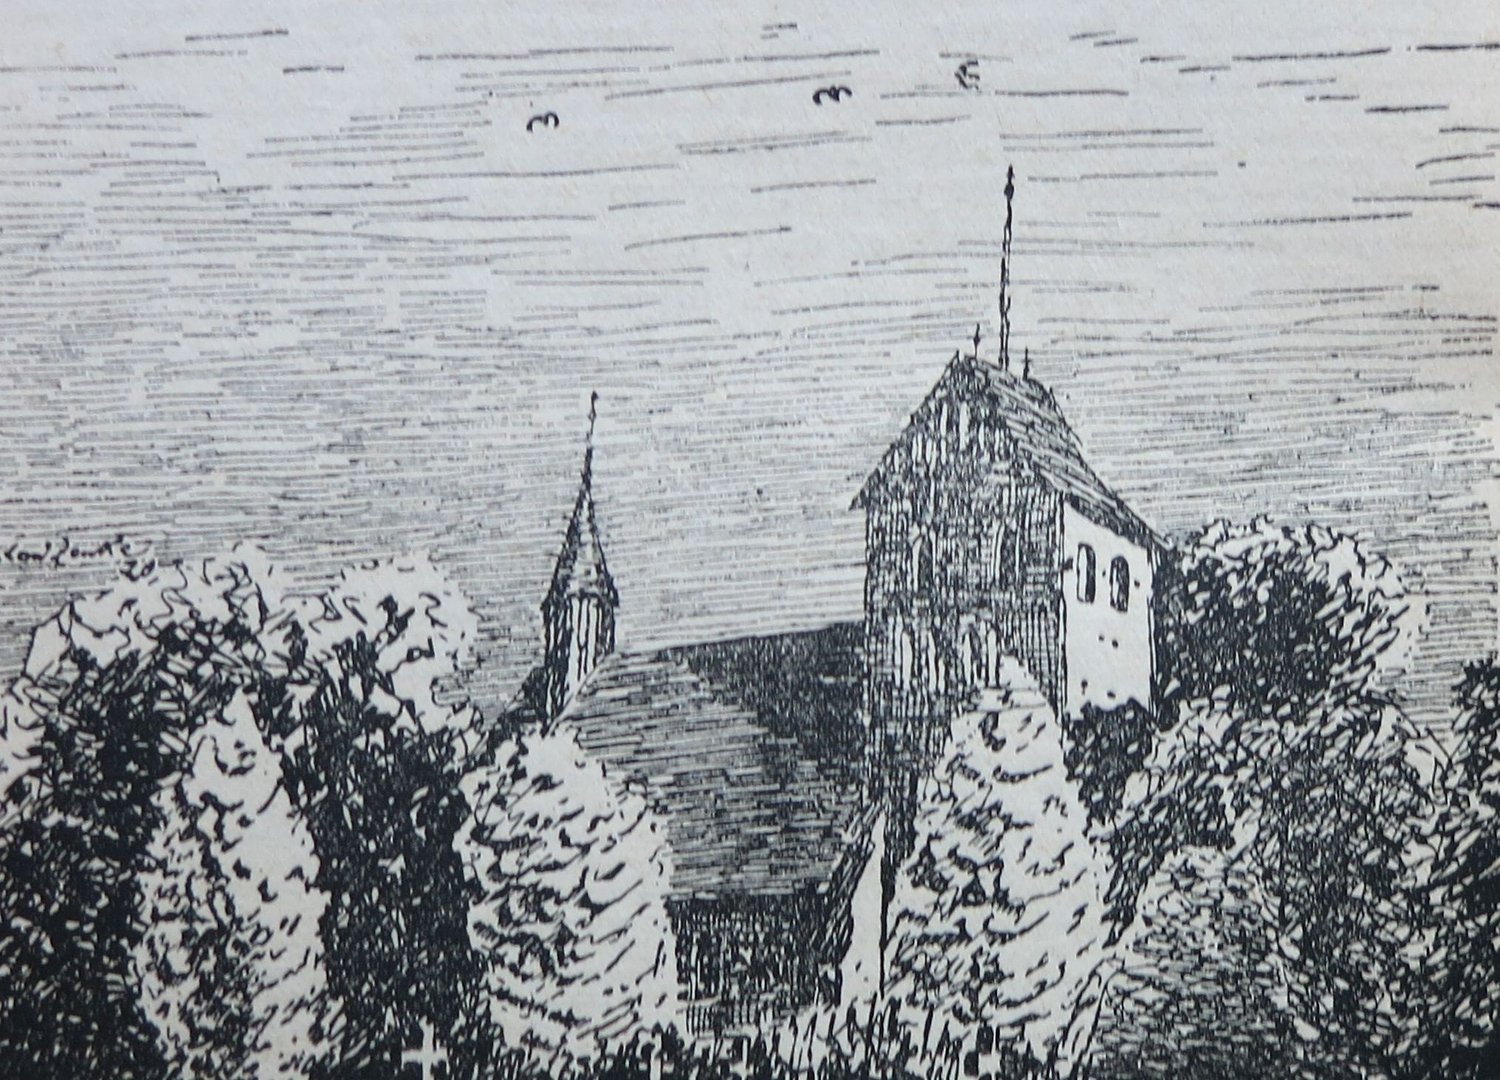 Zdjęcie 1. R. Zeneke, rysunek piórem, 1920 r.